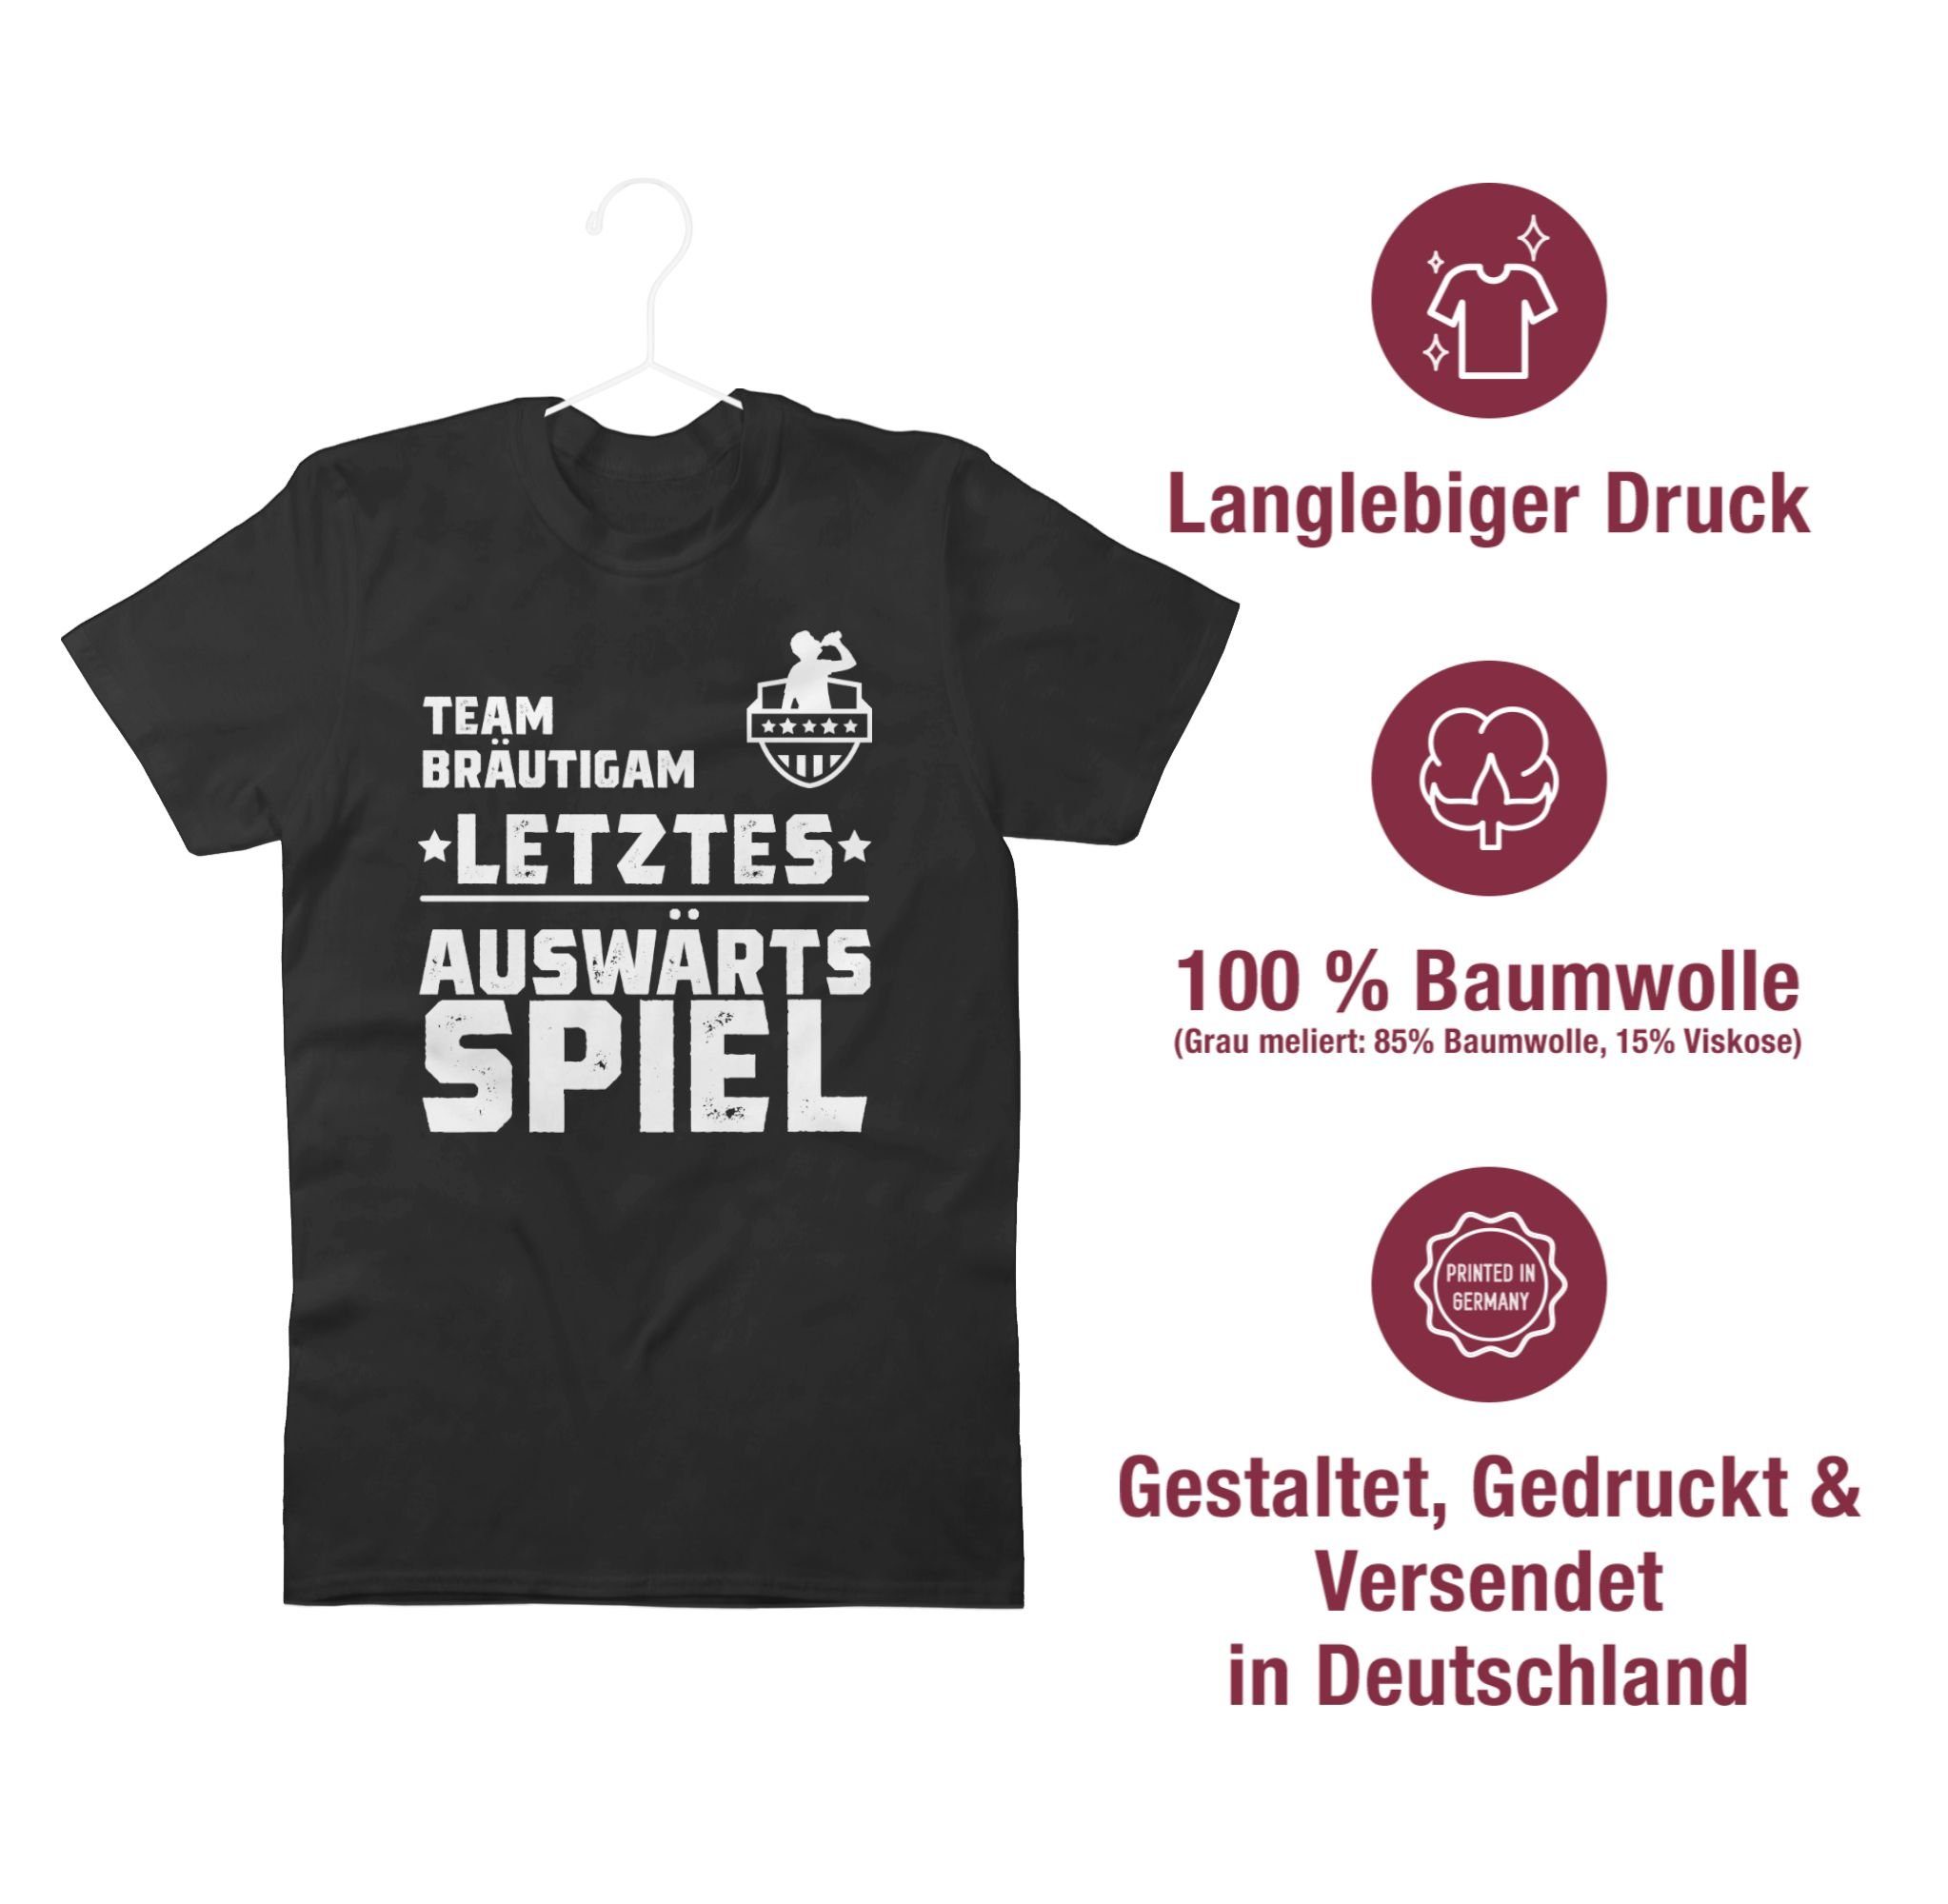 T-Shirt Auswärtsspiel Team Shirtracer Männer Schwarz JGA - Letztes Bräutigam 01 Auswärtstour